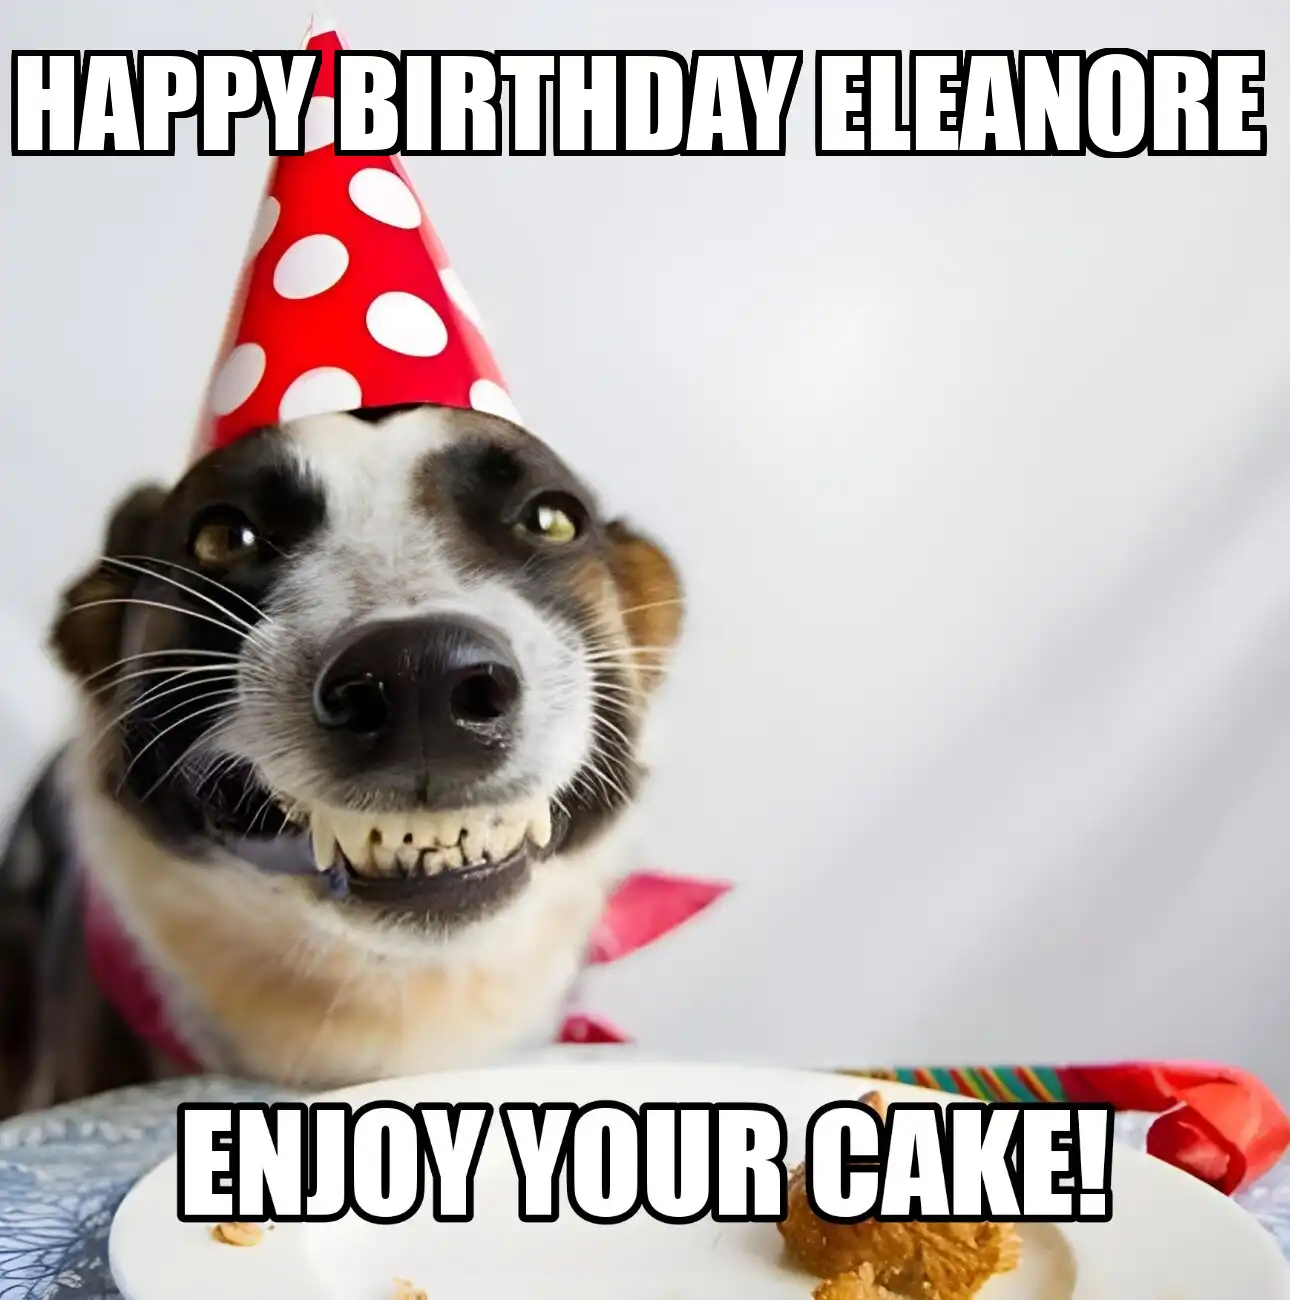 Happy Birthday Eleanore Enjoy Your Cake Dog Meme